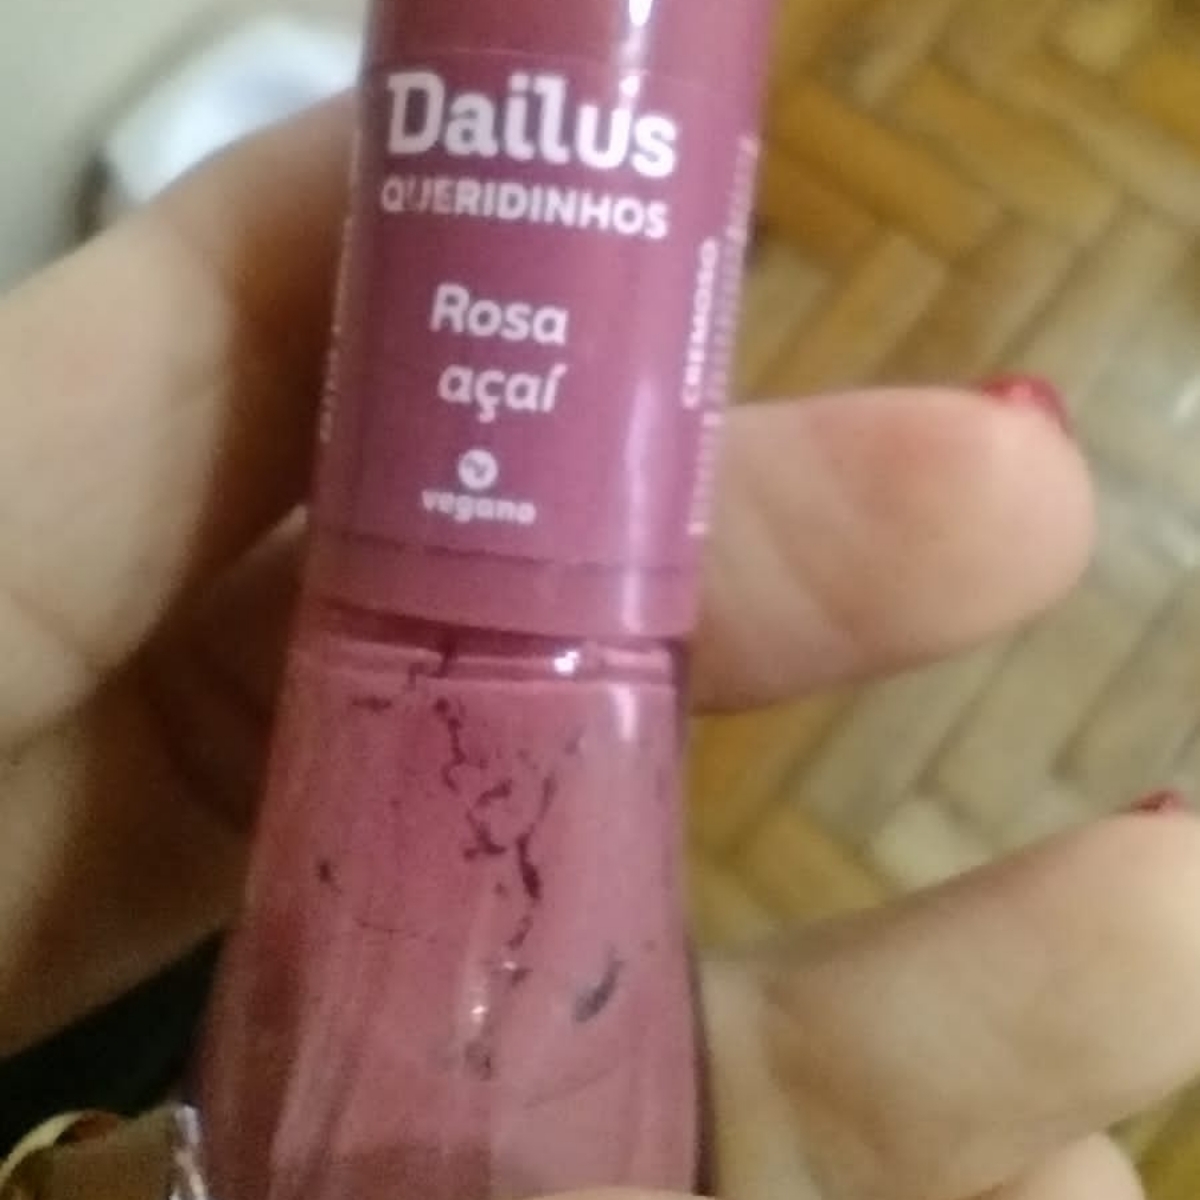 Dailus Rosa açaí Review | abillion